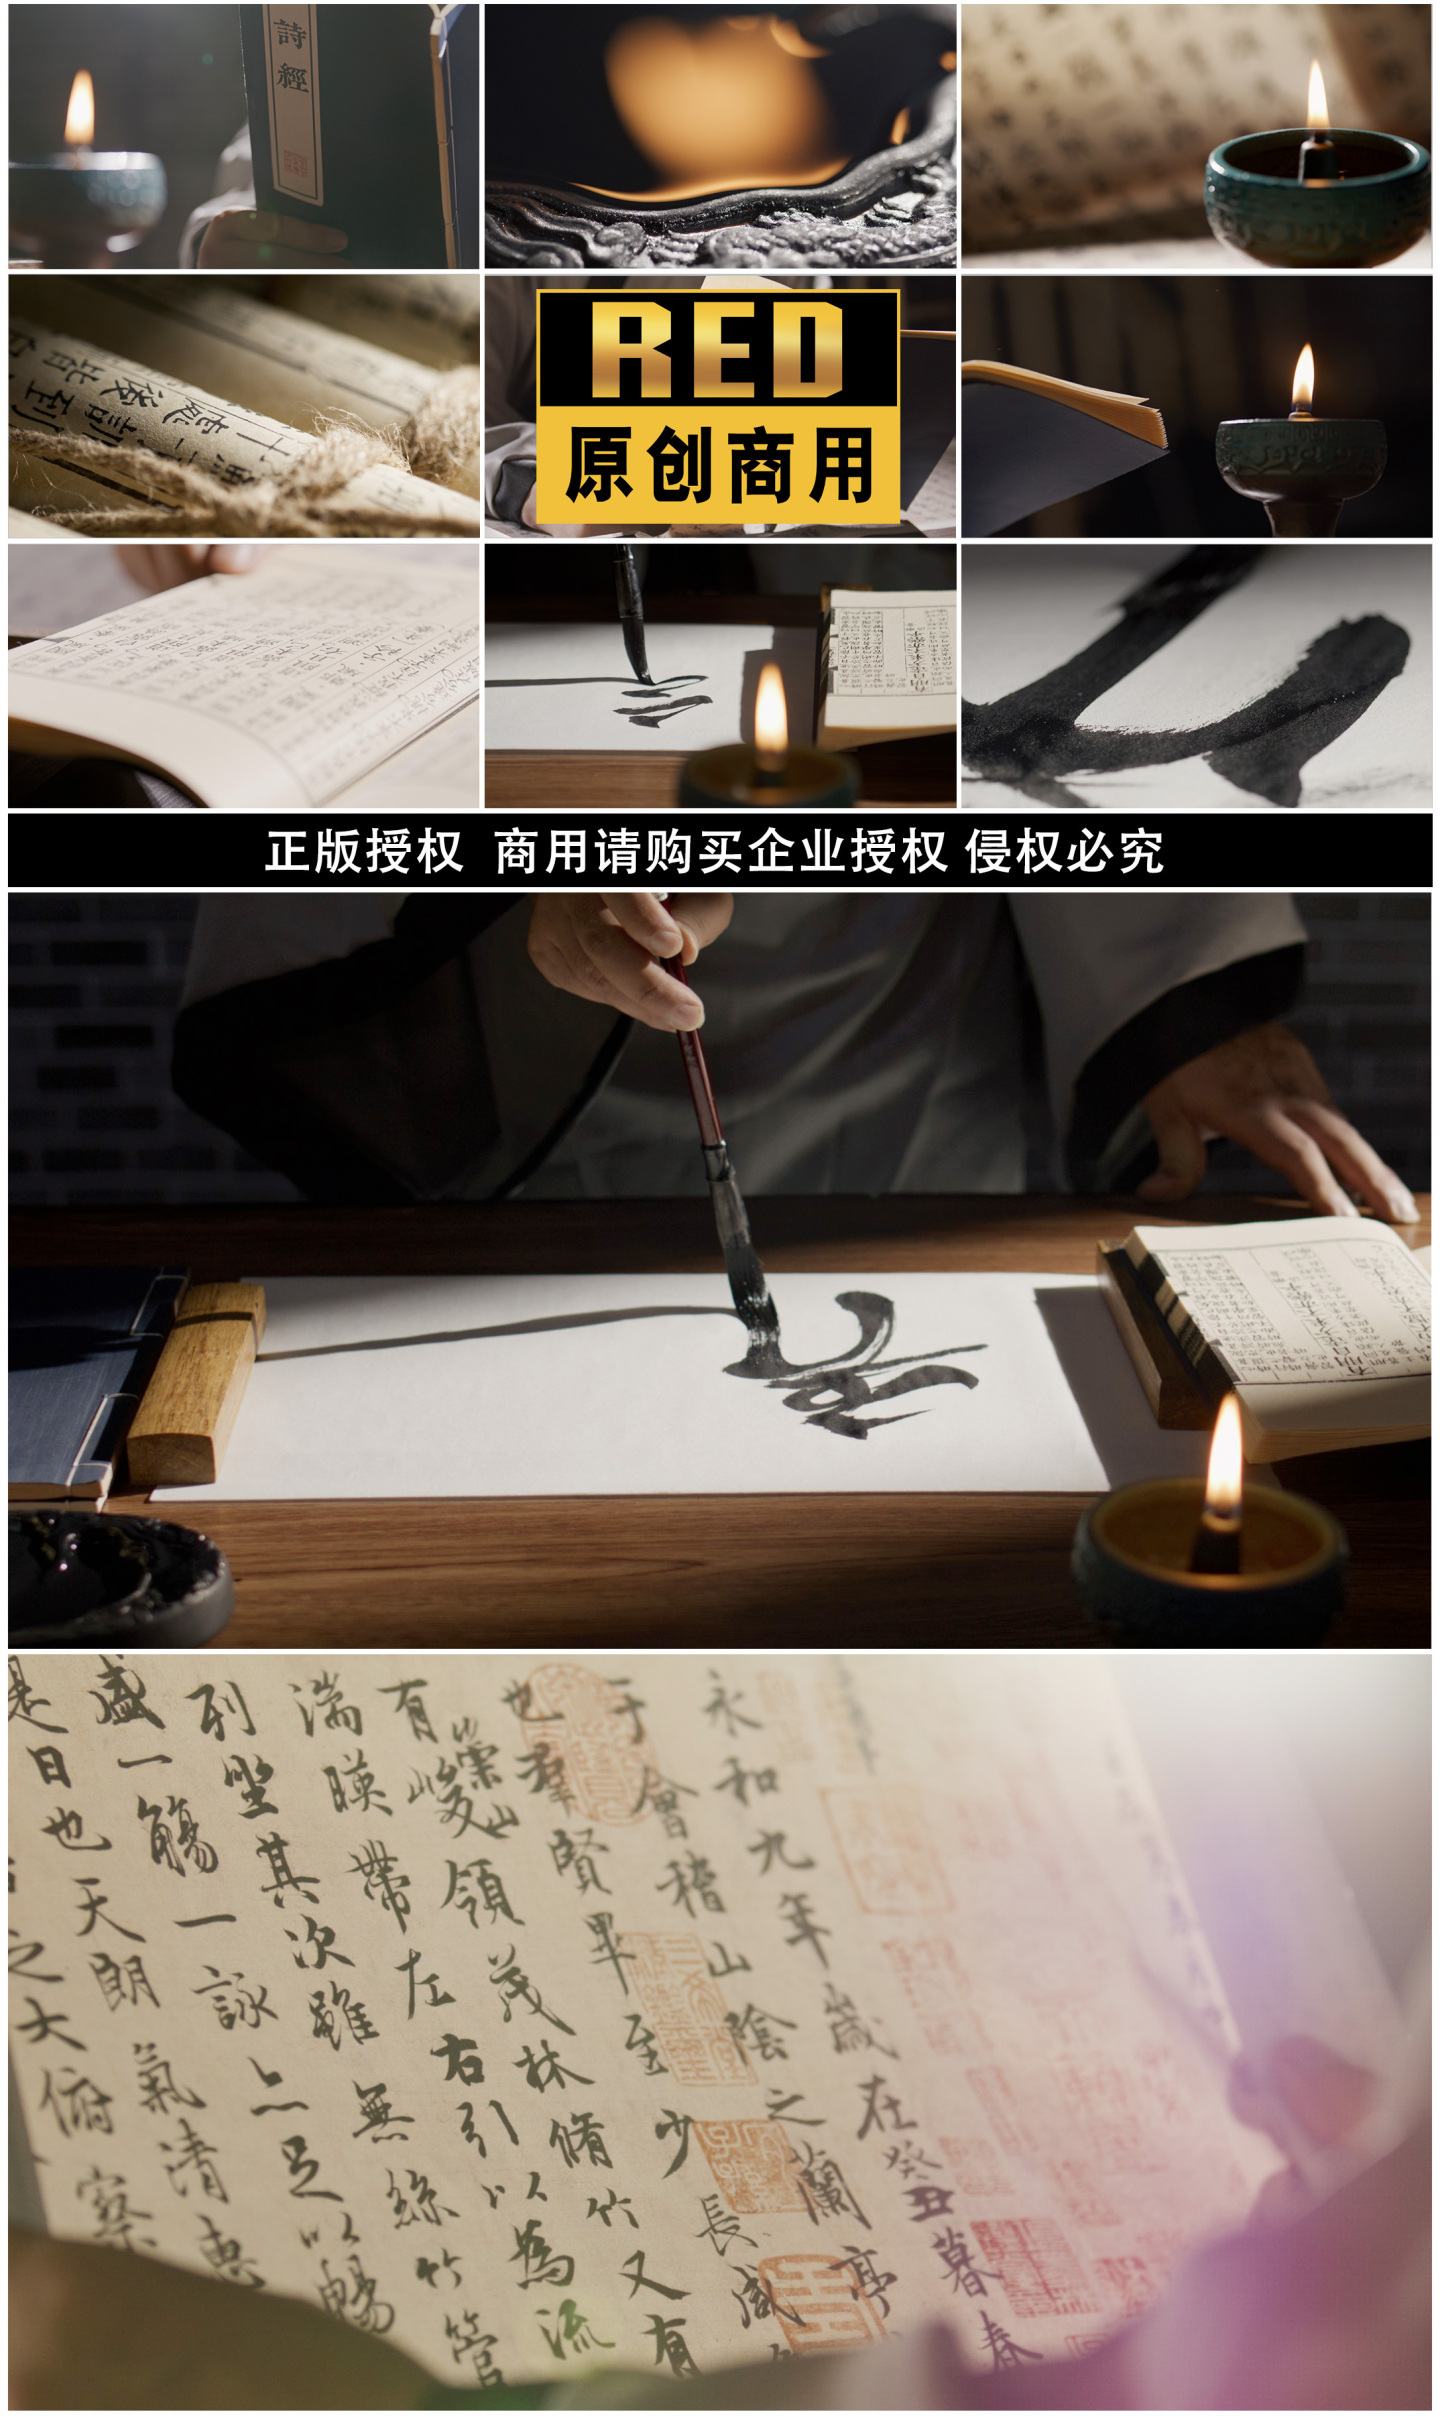 古风书法诗人汉文化传承